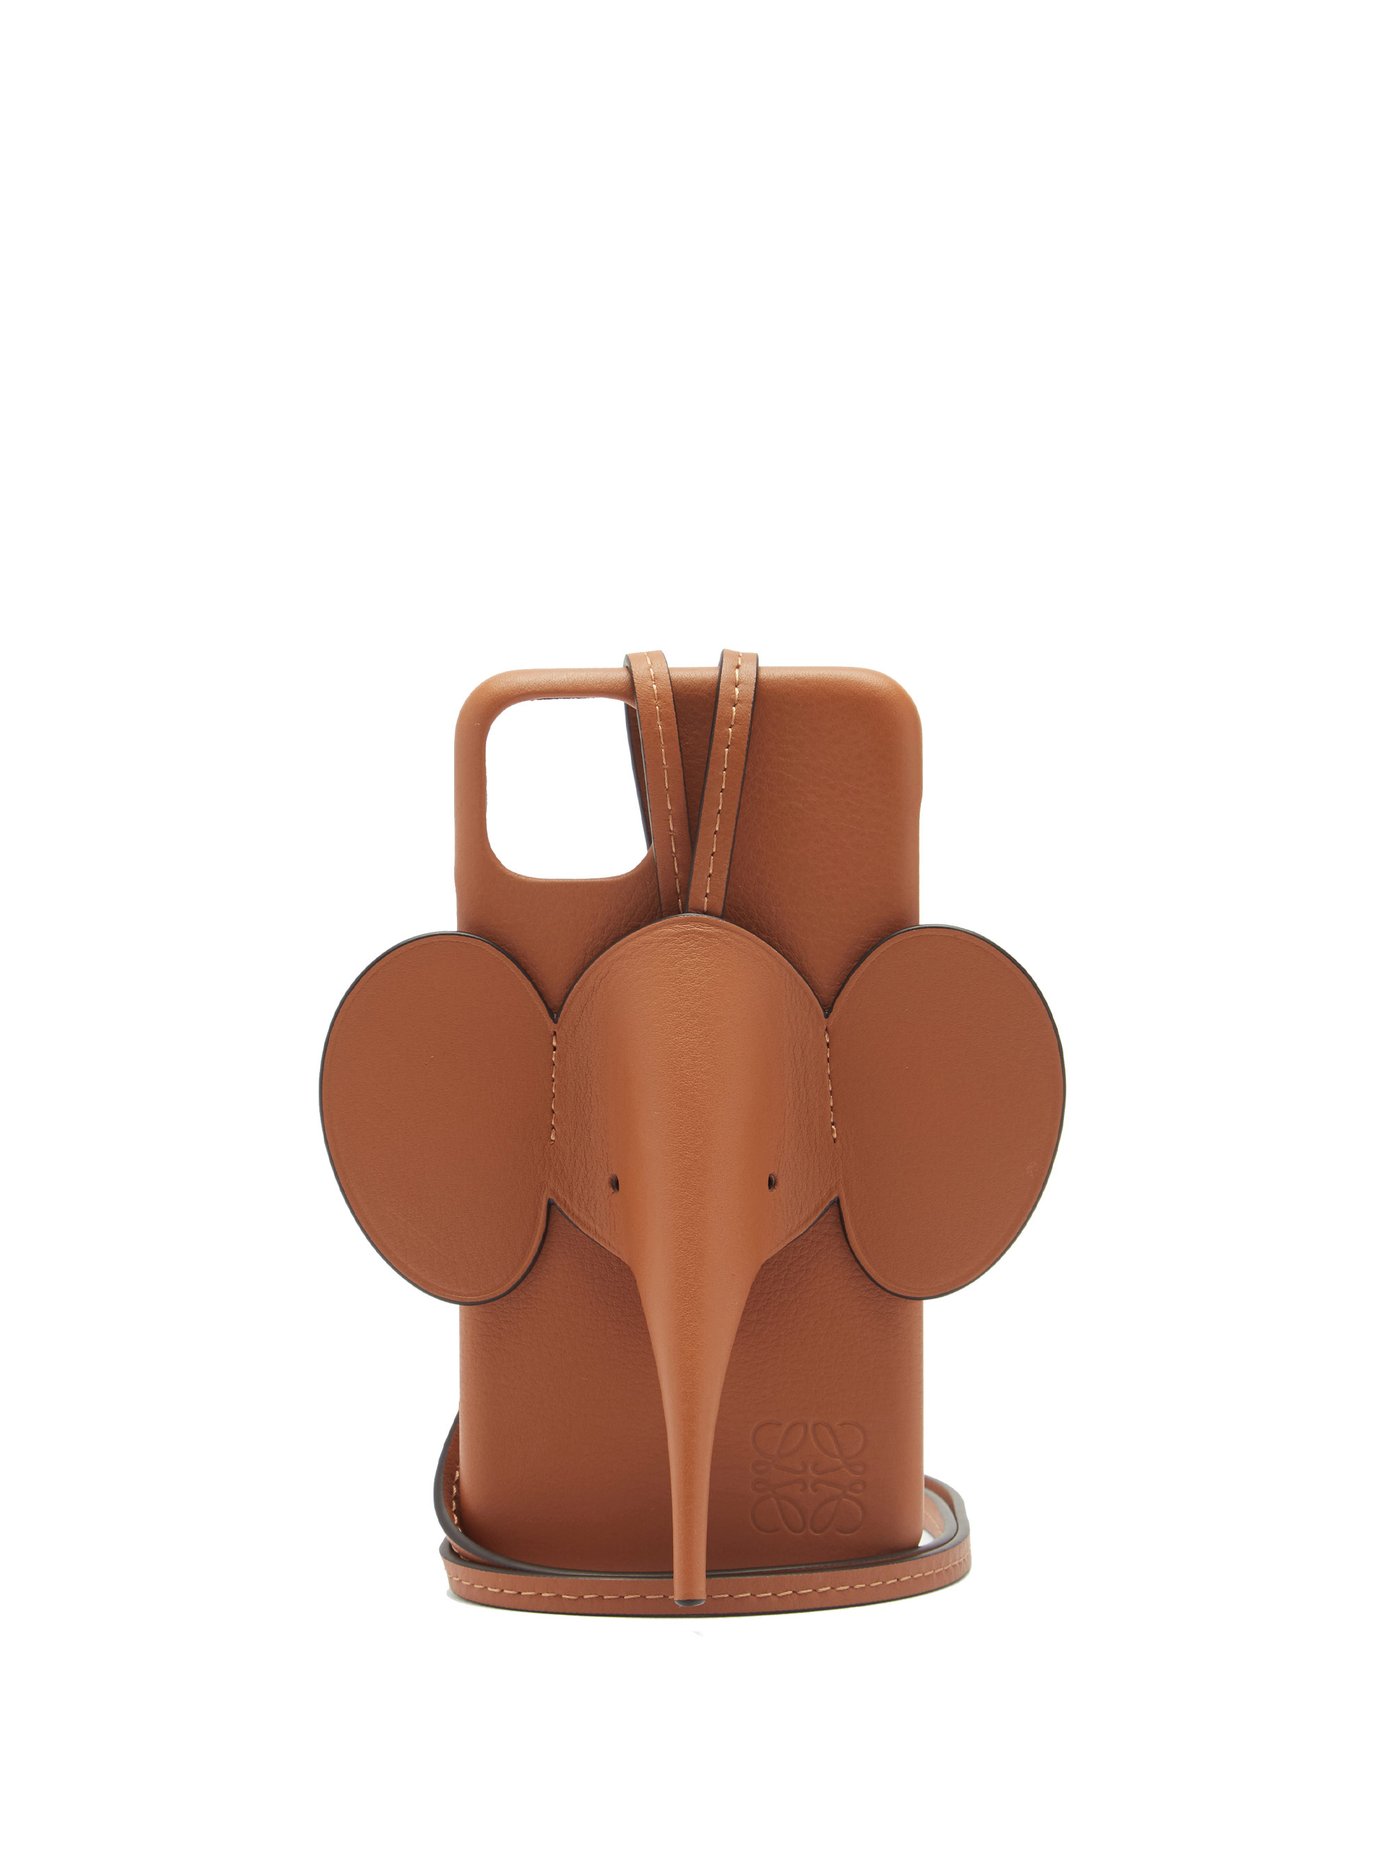 LOEWE Elephant iPhone 11 Pro Max leather phone case